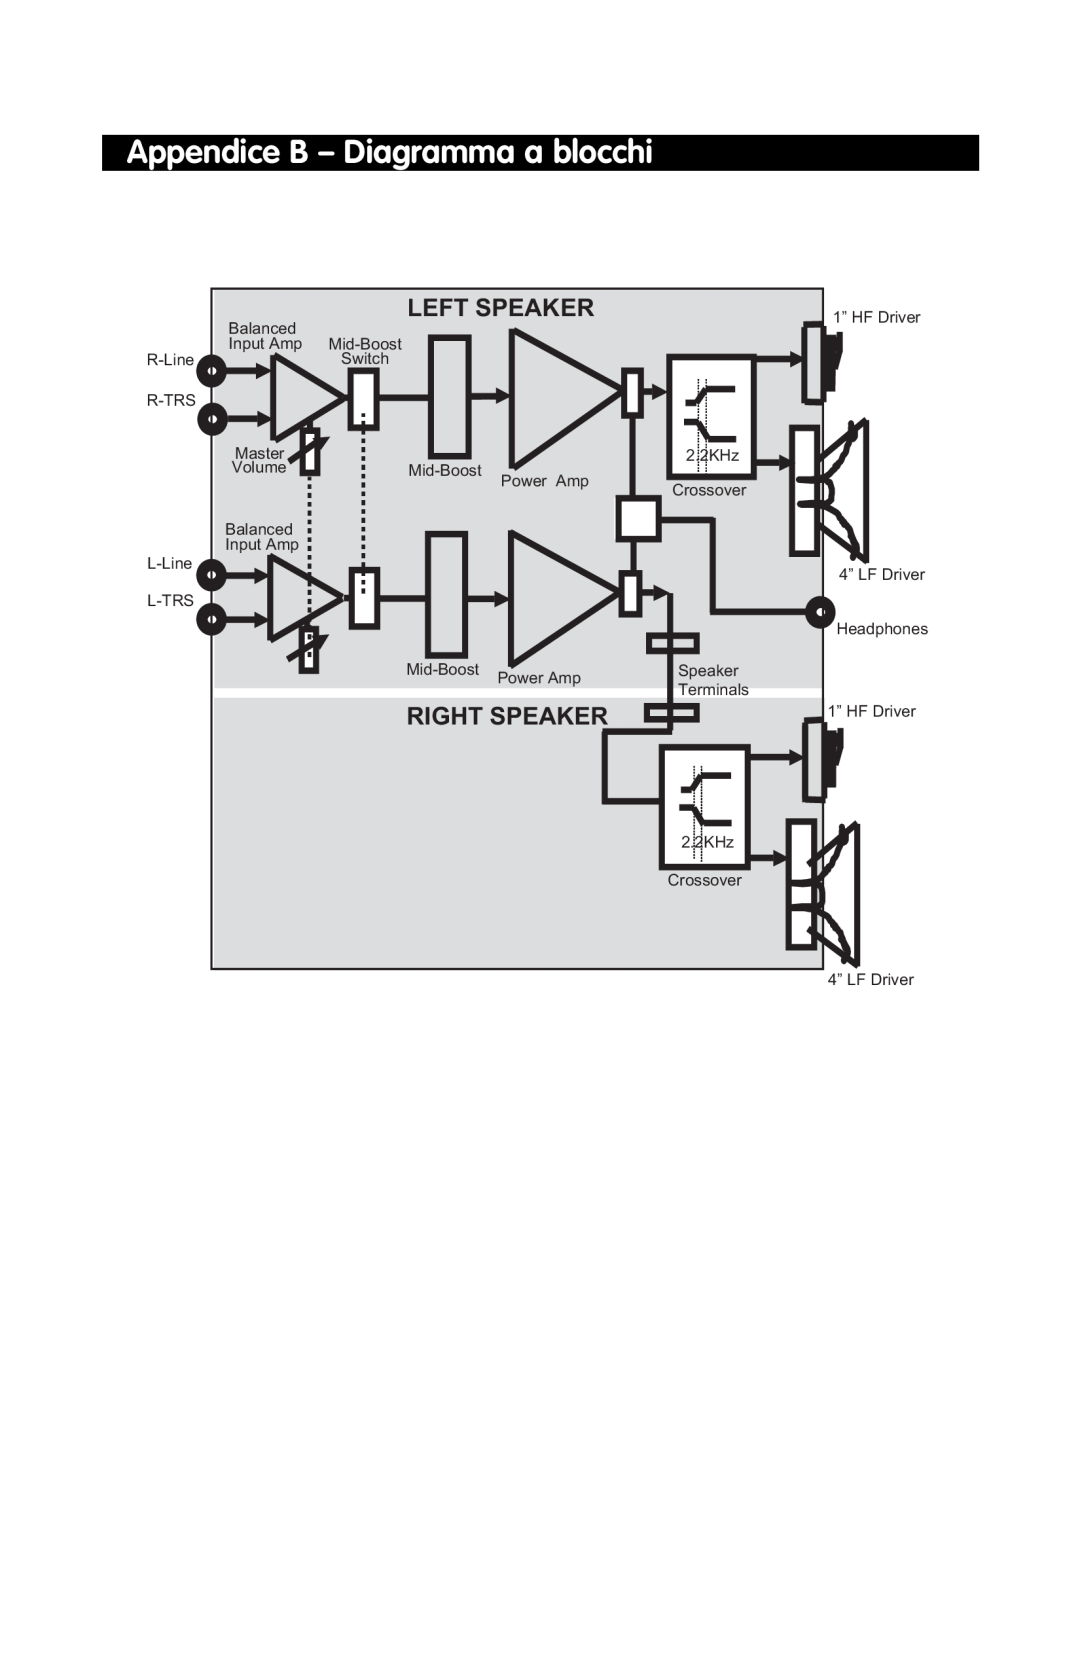 M-Audio DX4 manual Appendice B - Diagramma a blocchi, Left Speaker, Right Speaker 